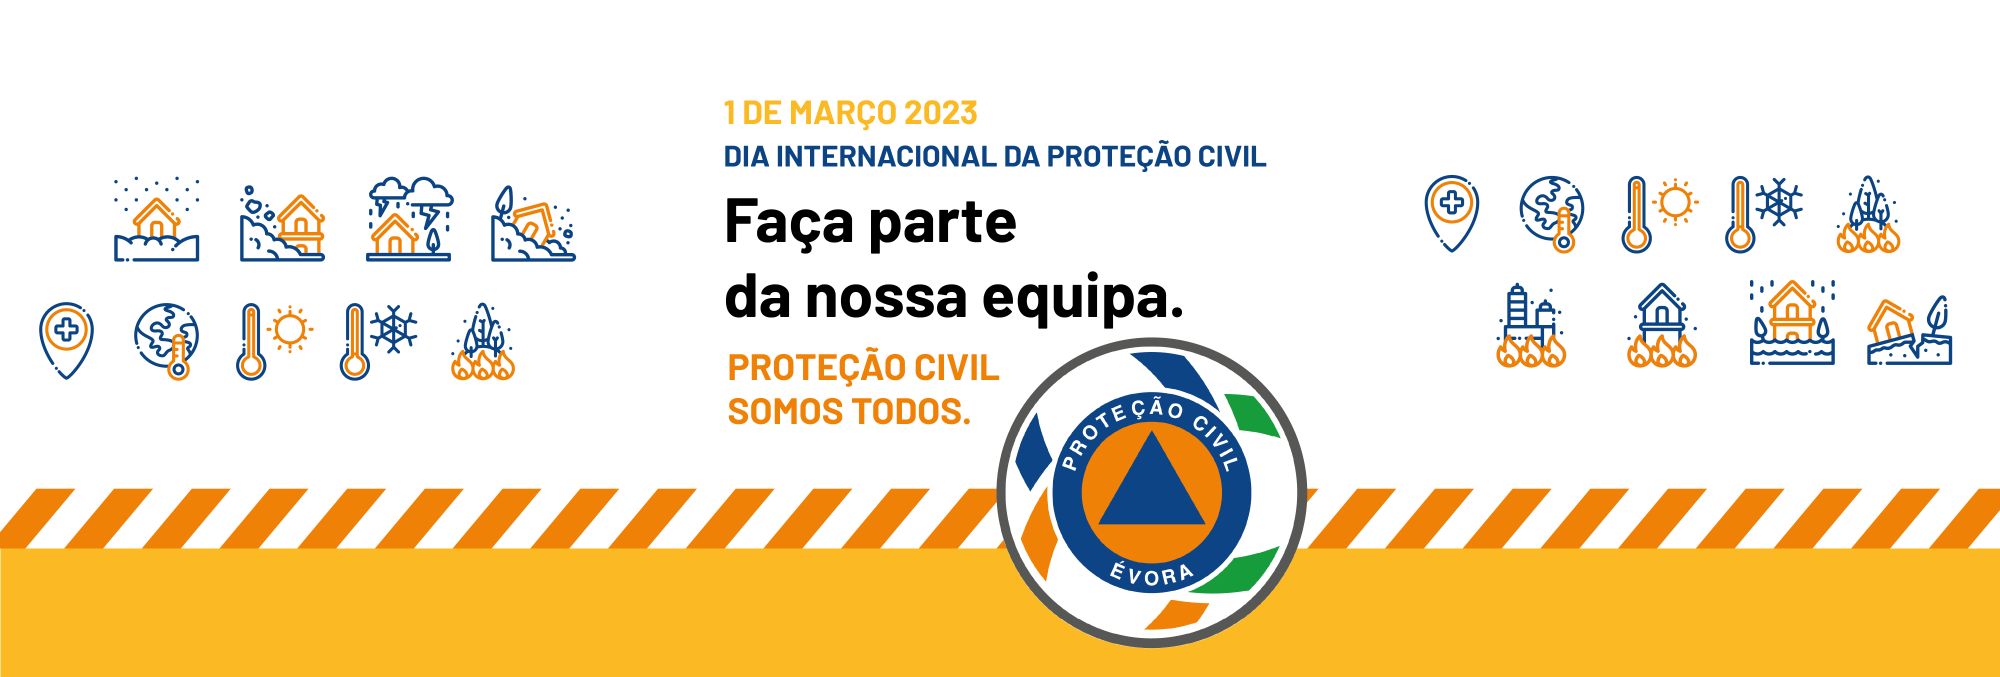 1 de Março 2023 | Dia Internacional da Proteção Civil